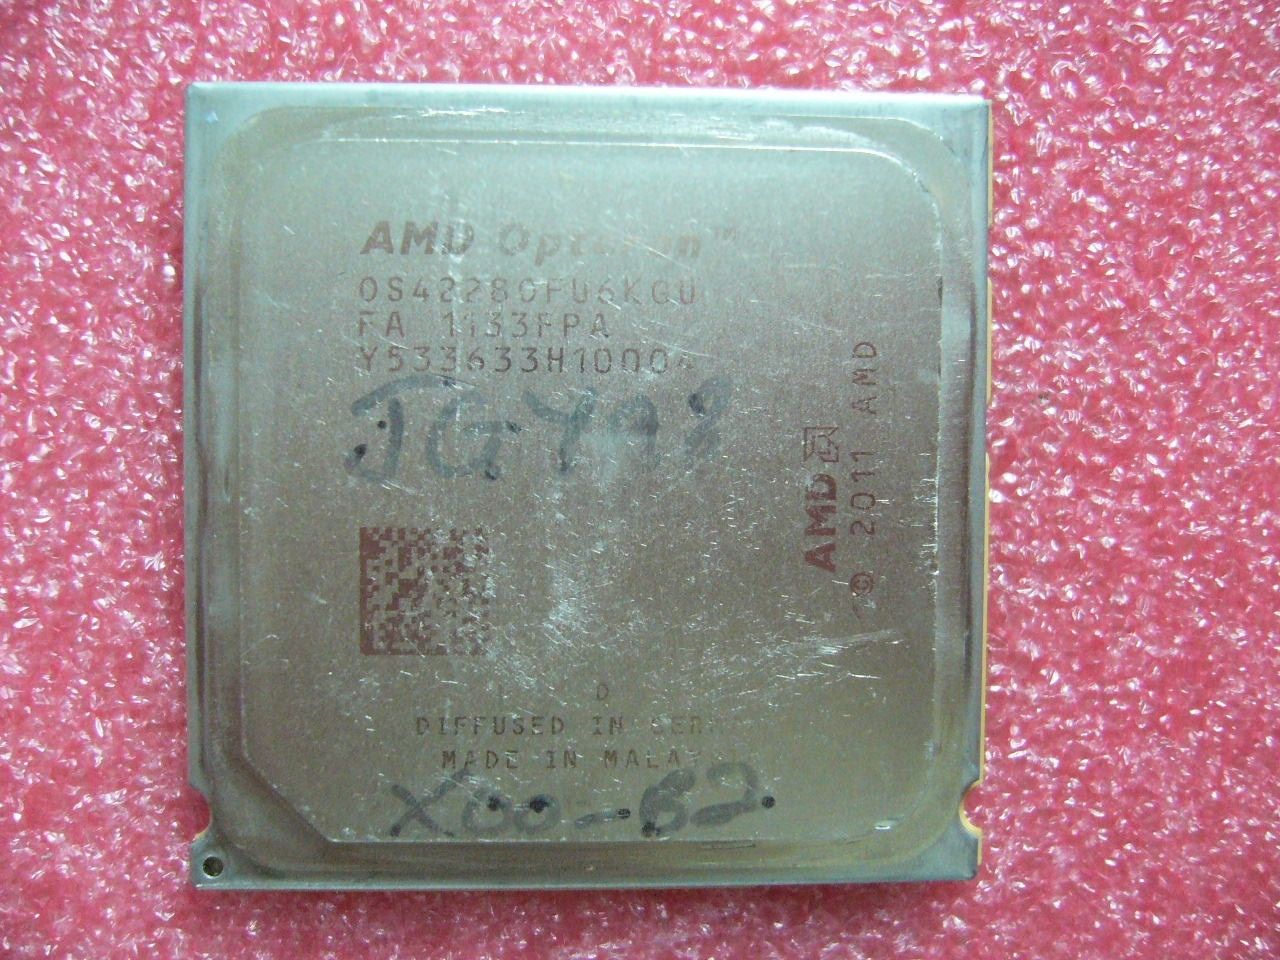 QTY 1x AMD Opteron 4228 HE 2.8 GHz Six Core (OS4228OFU6KGU) CPU Socket C32